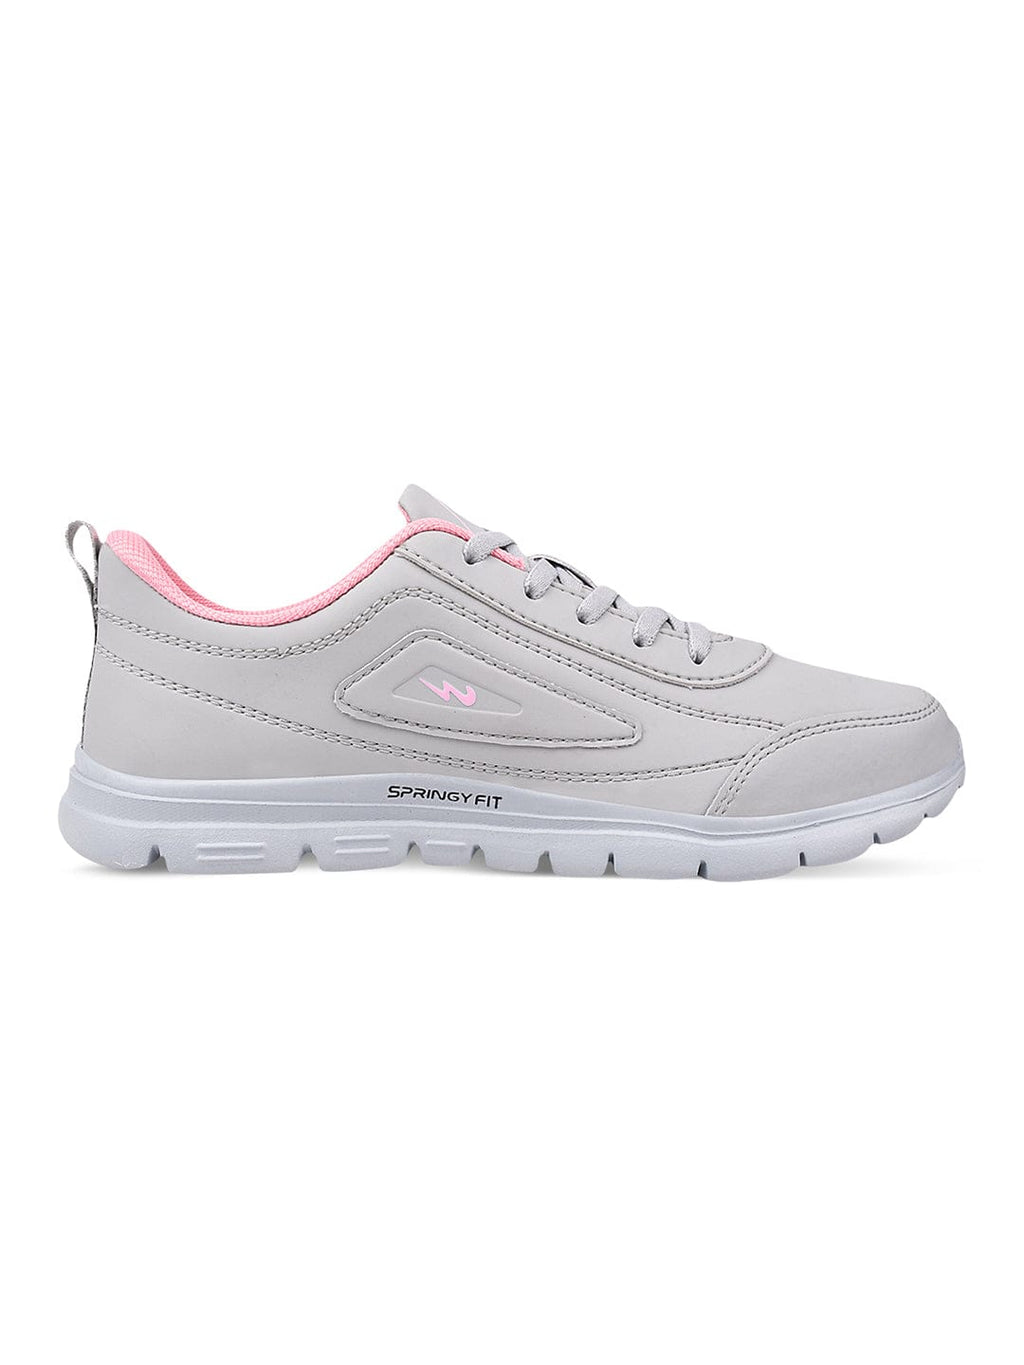 Buy Campus Women Grey & Pink Yoga Flex Memory Tech Lite Mesh Running Shoes  - Sports Shoes for Women 17319464